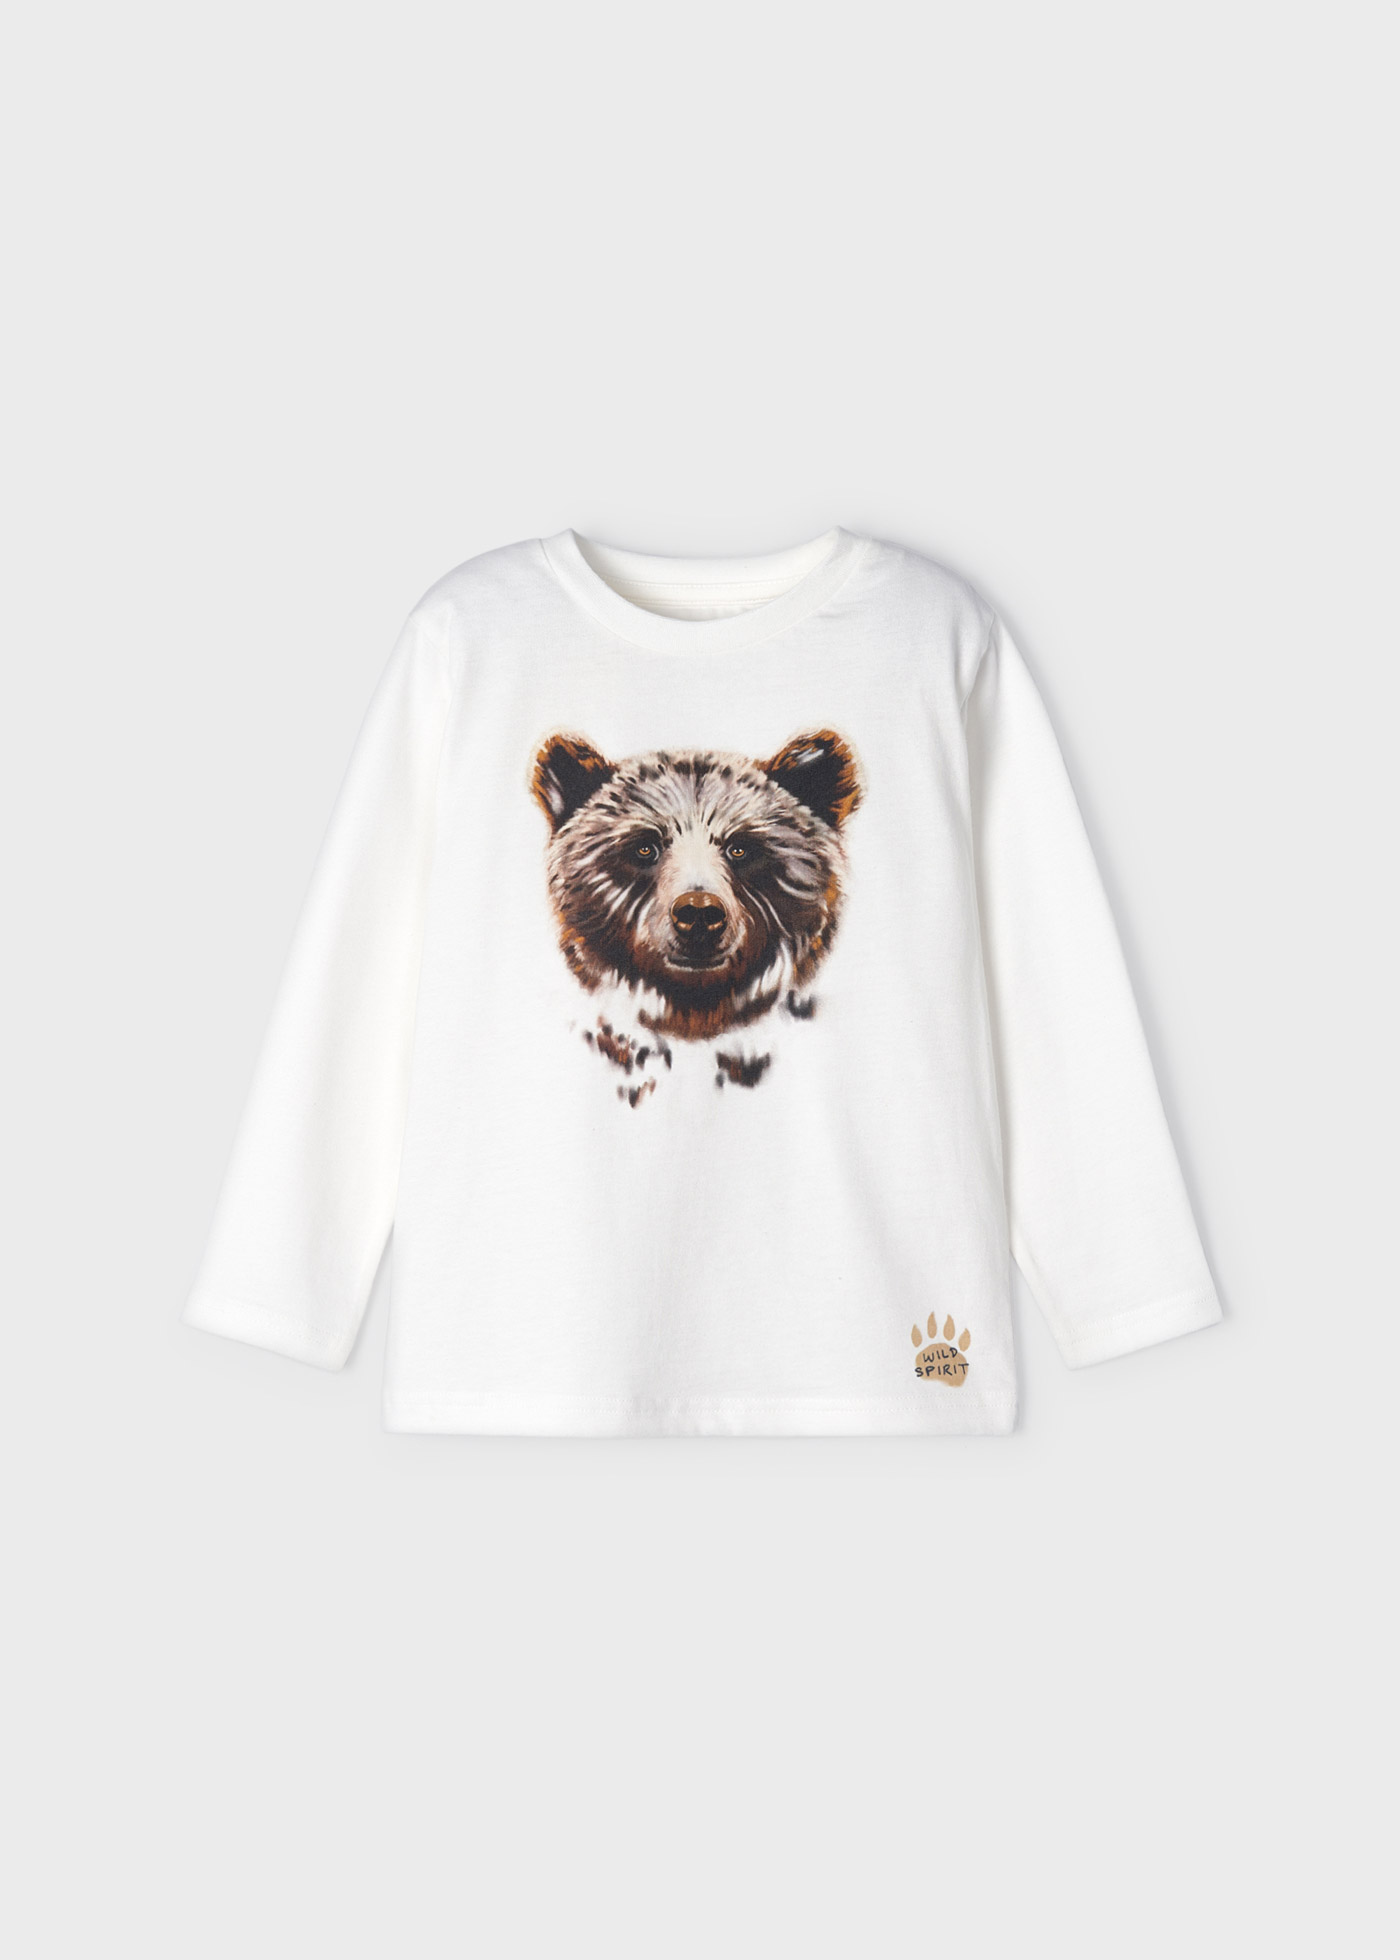 (image for) Maglietta manica lunga con grafica orso bambino ECOFRIENDS mayoral Art. 12-04006-026